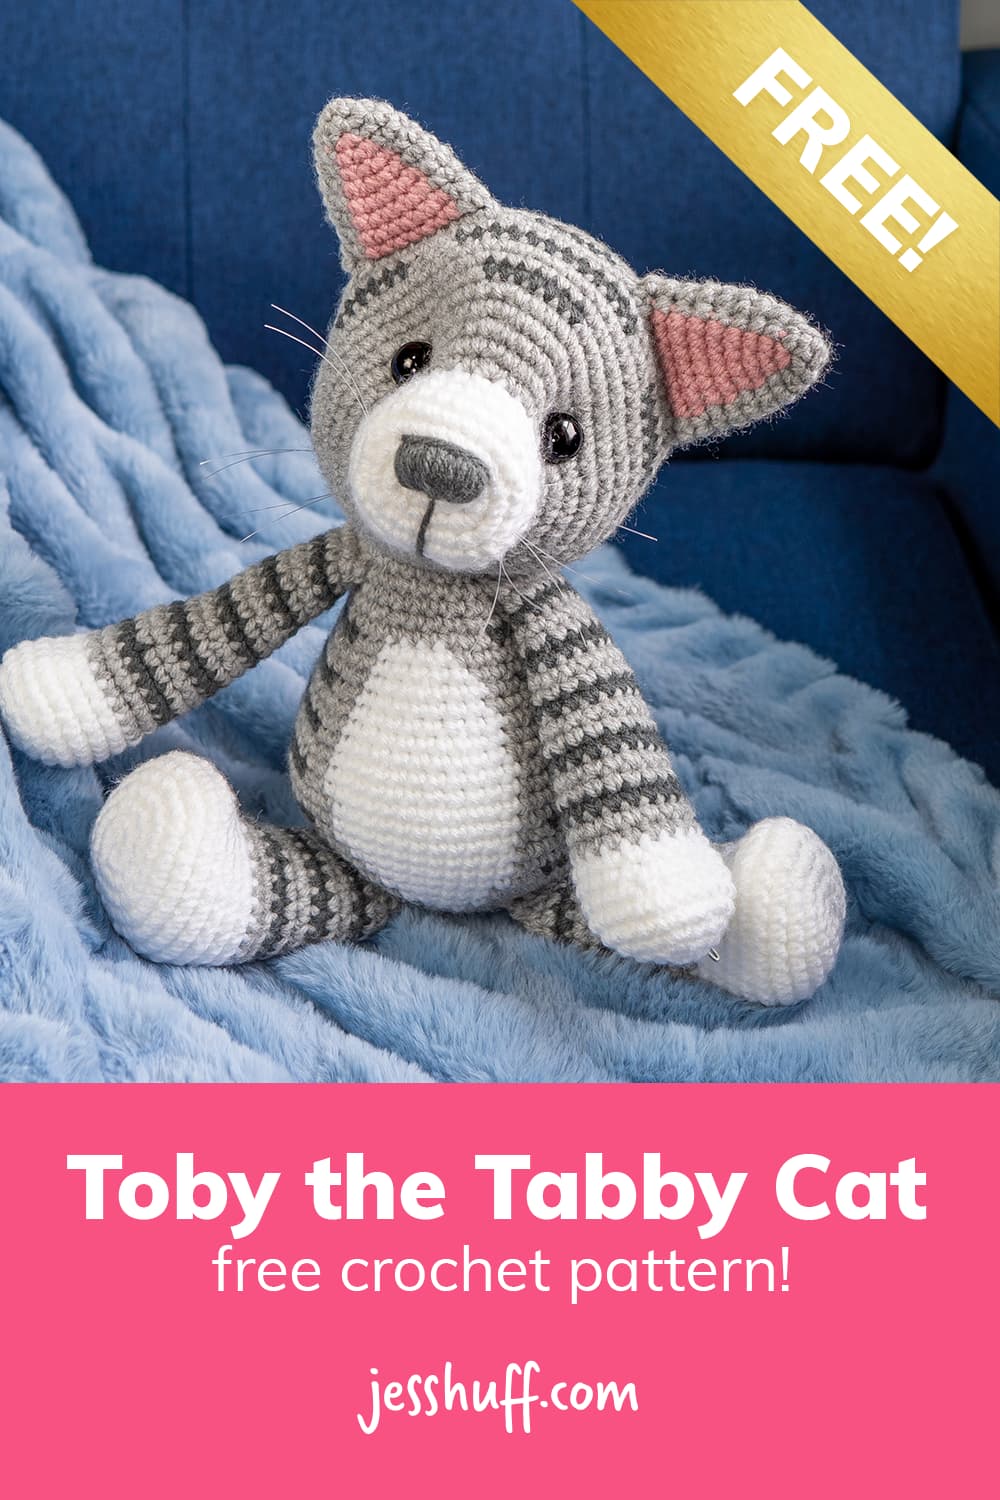 Free amigurumi crochet pattern for Toby the Tabby Cat. via @heyjesshuff